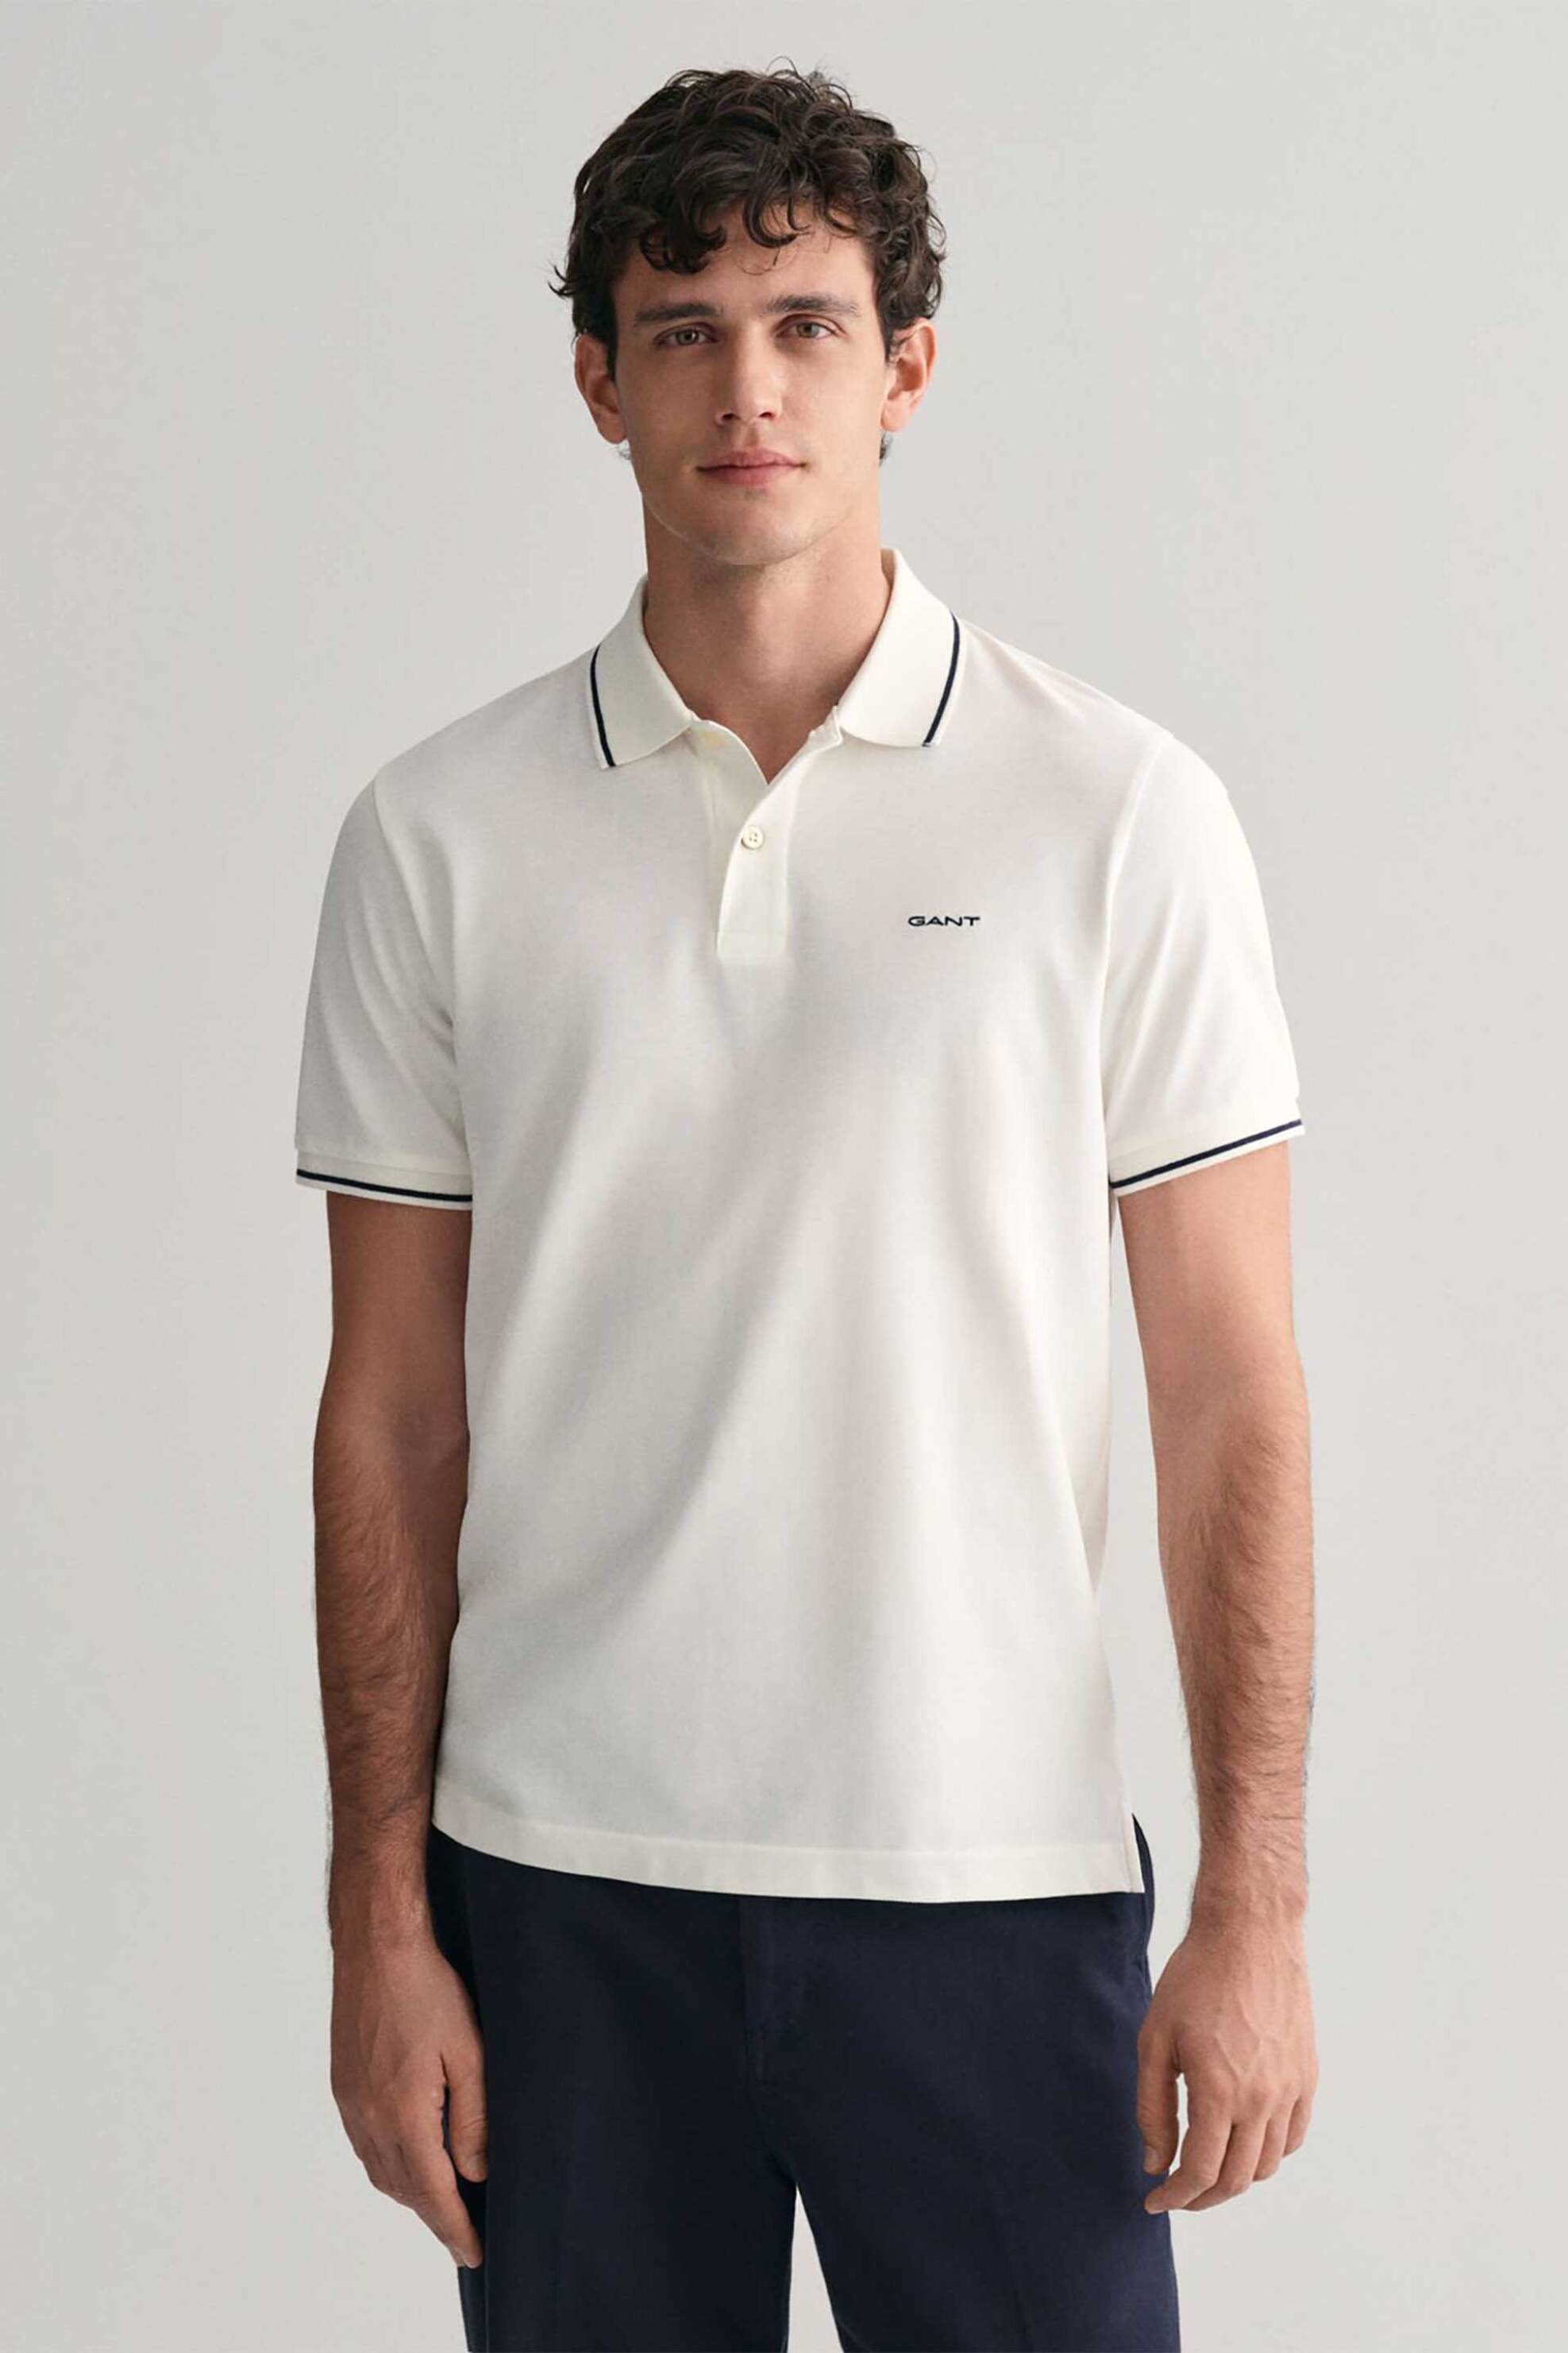 Ανδρική Μόδα > Ανδρικά Ρούχα > Ανδρικές Μπλούζες > Ανδρικές Μπλούζες Πολο Gant ανδρική πόλο μπλούζα πικέ με contrast ρίγα στα τελειώματα Regular Fit - 2062034 Λευκό